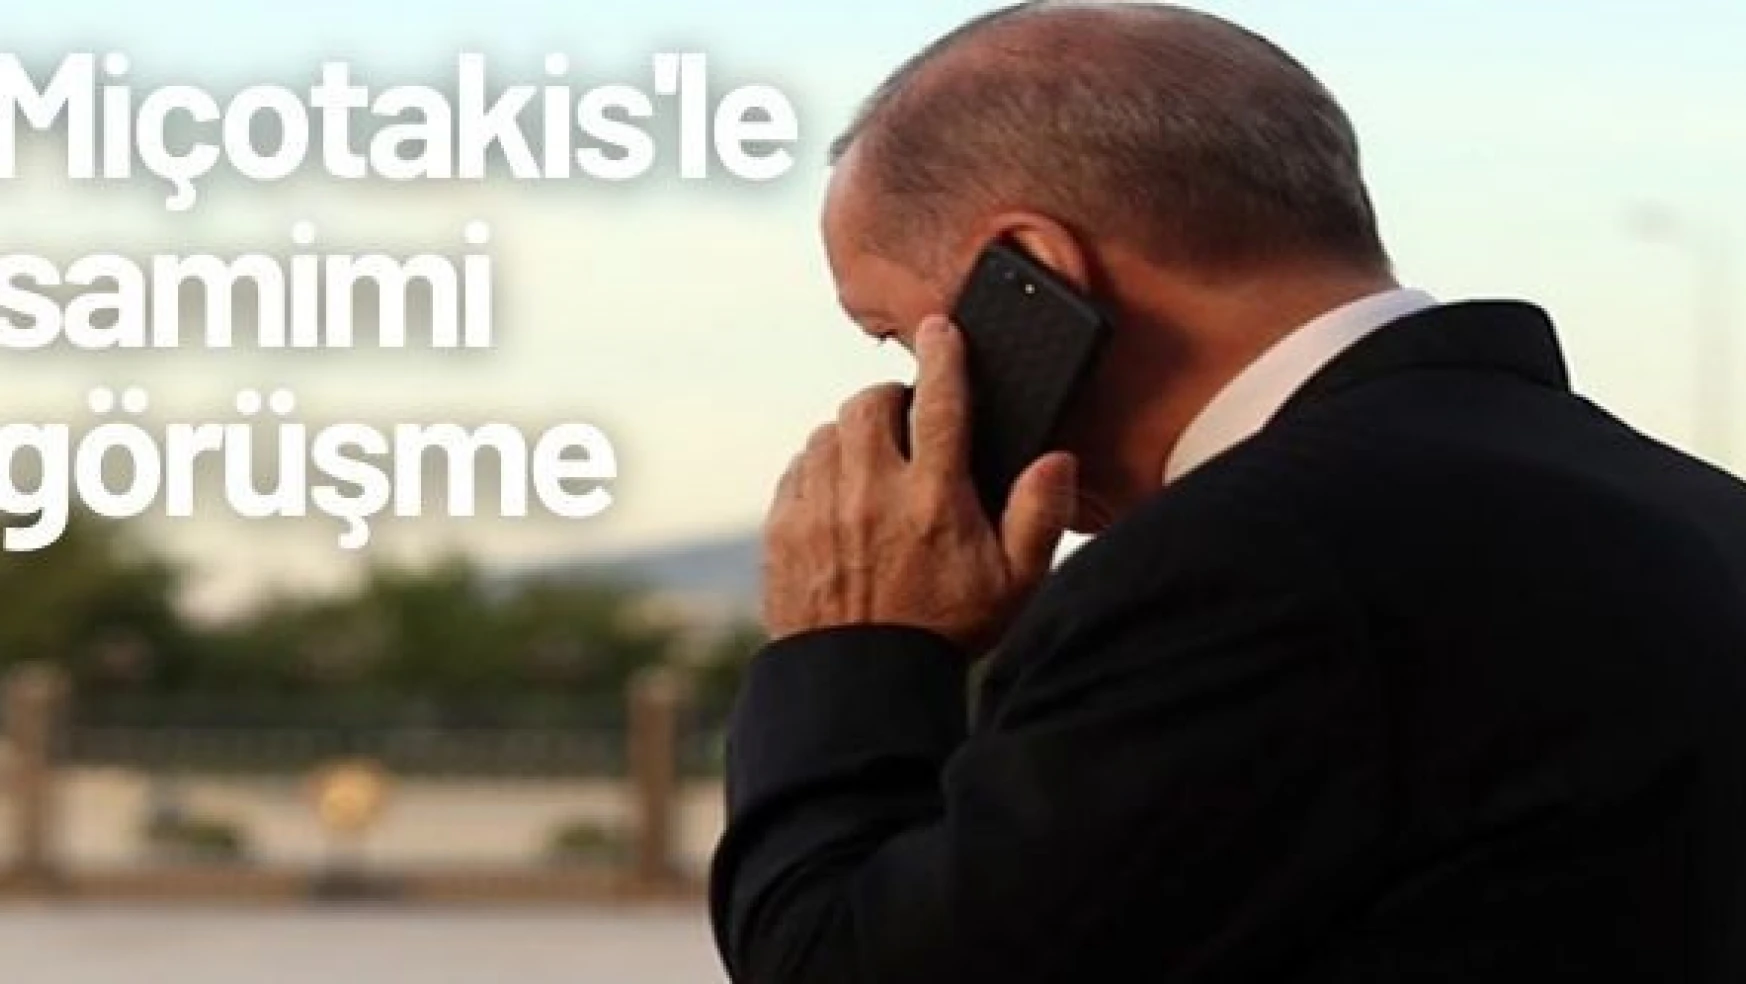 Erdoğan Miçotakis'le telefon görüşmesi yaptı